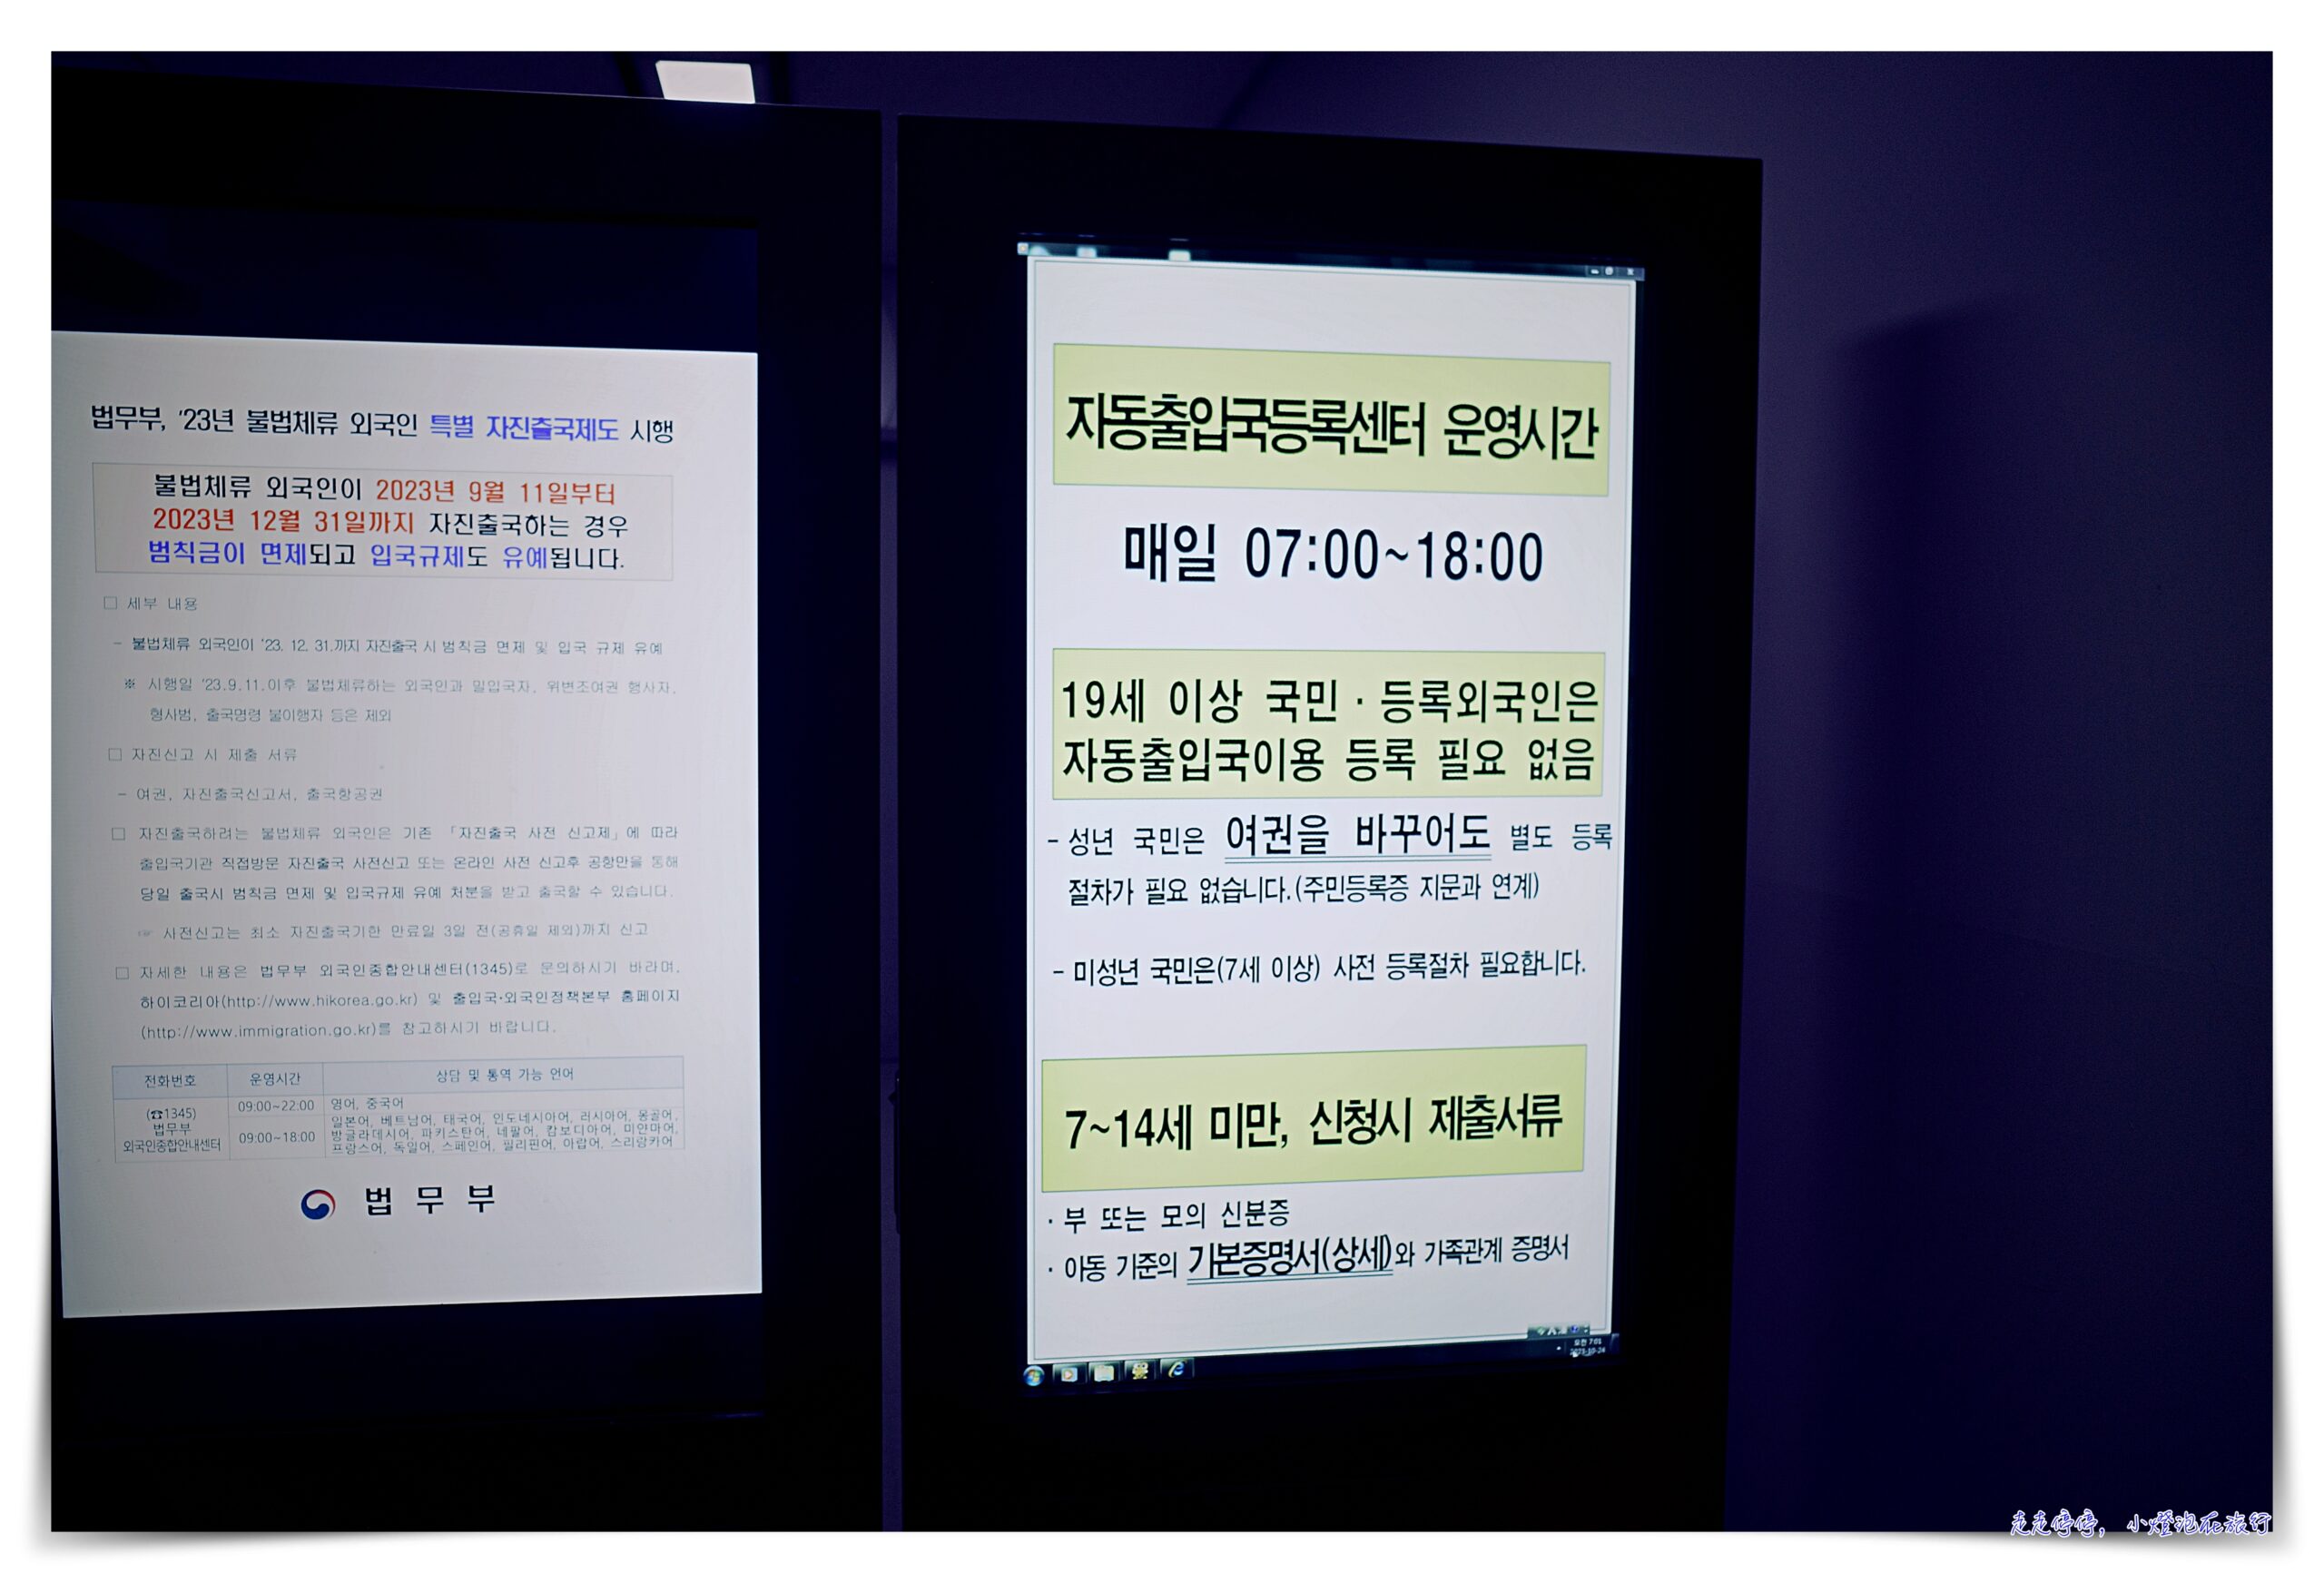 韓國快速自動通關申請，以後都走Face ID自動通關走道就可以